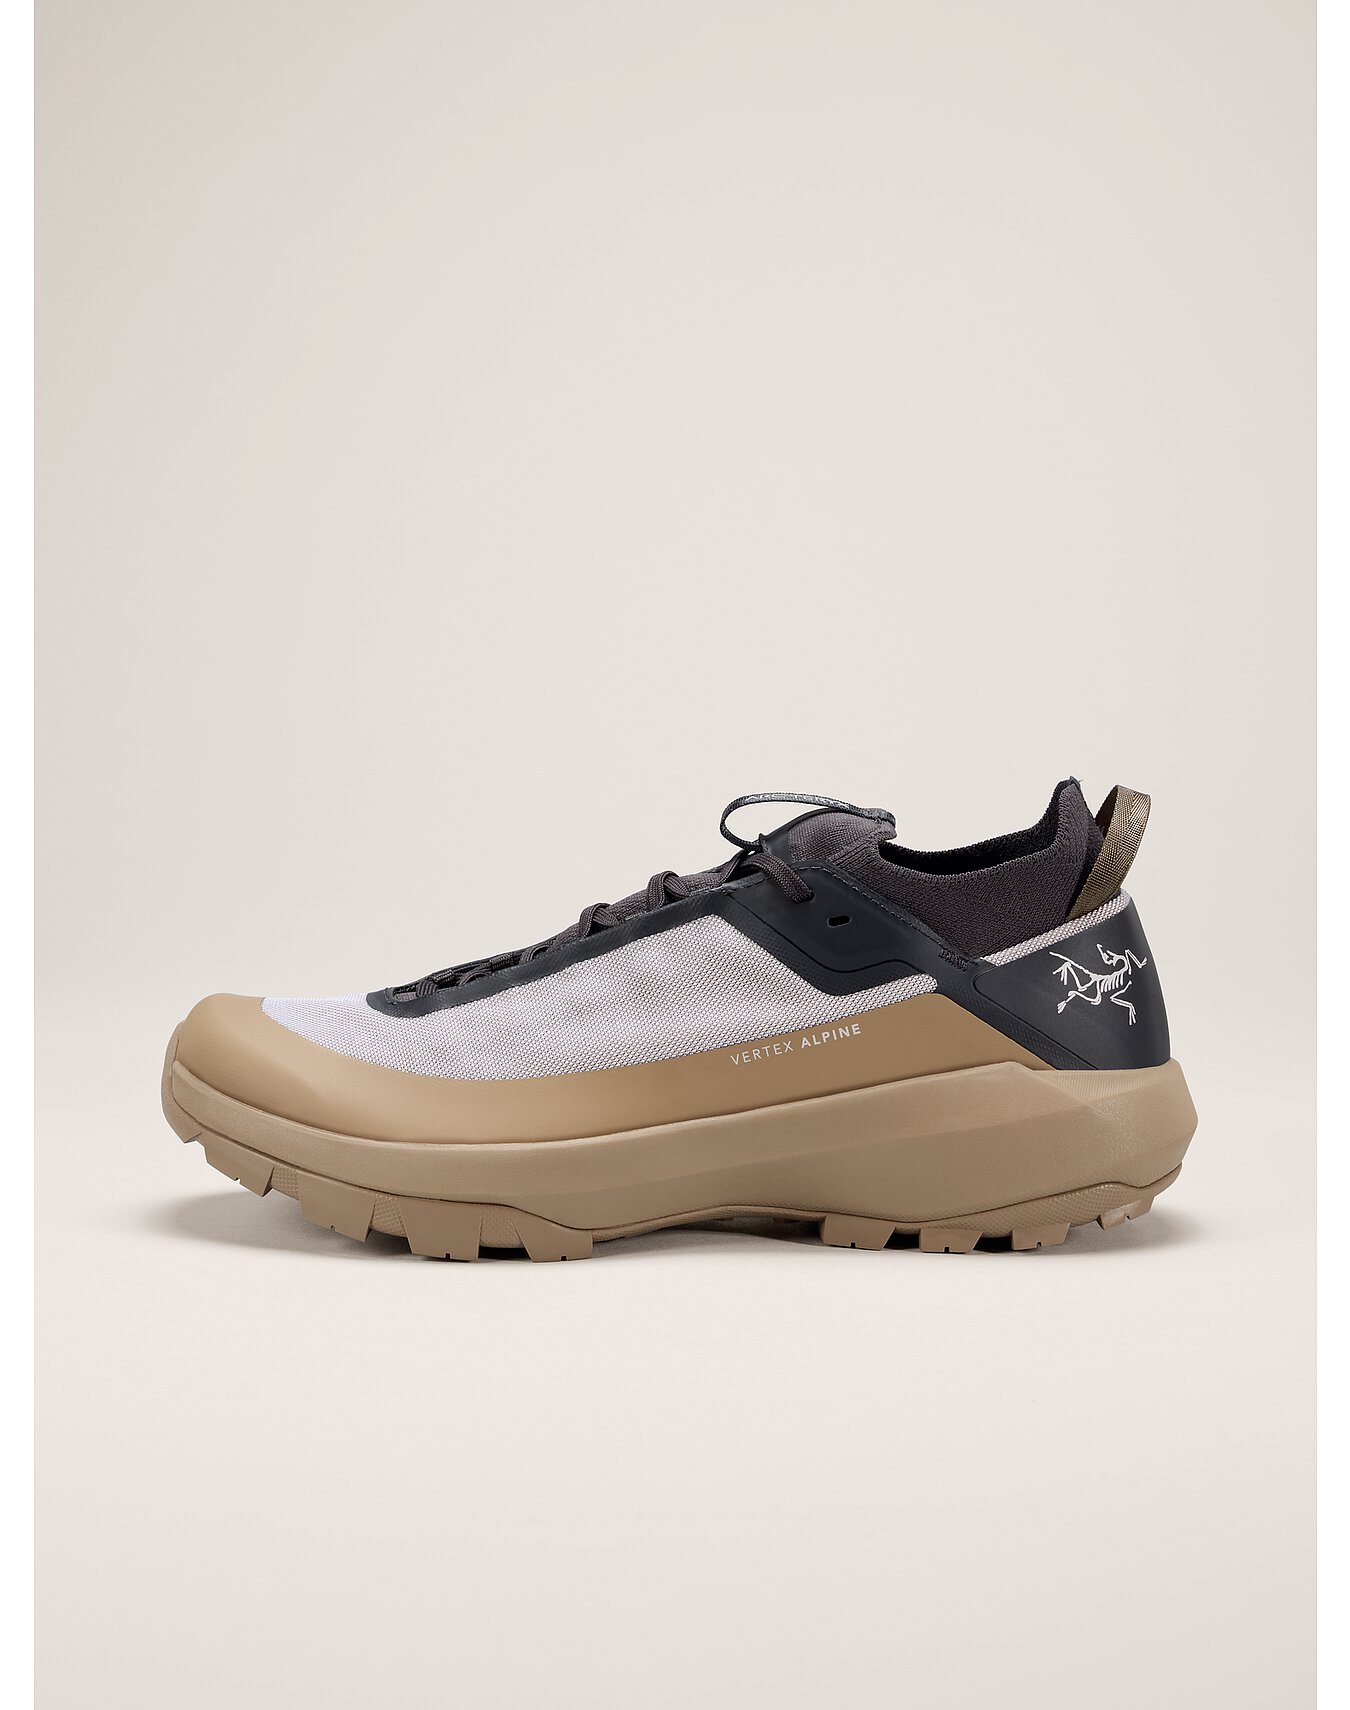 Men's Climb Footwear | Arc'teryx